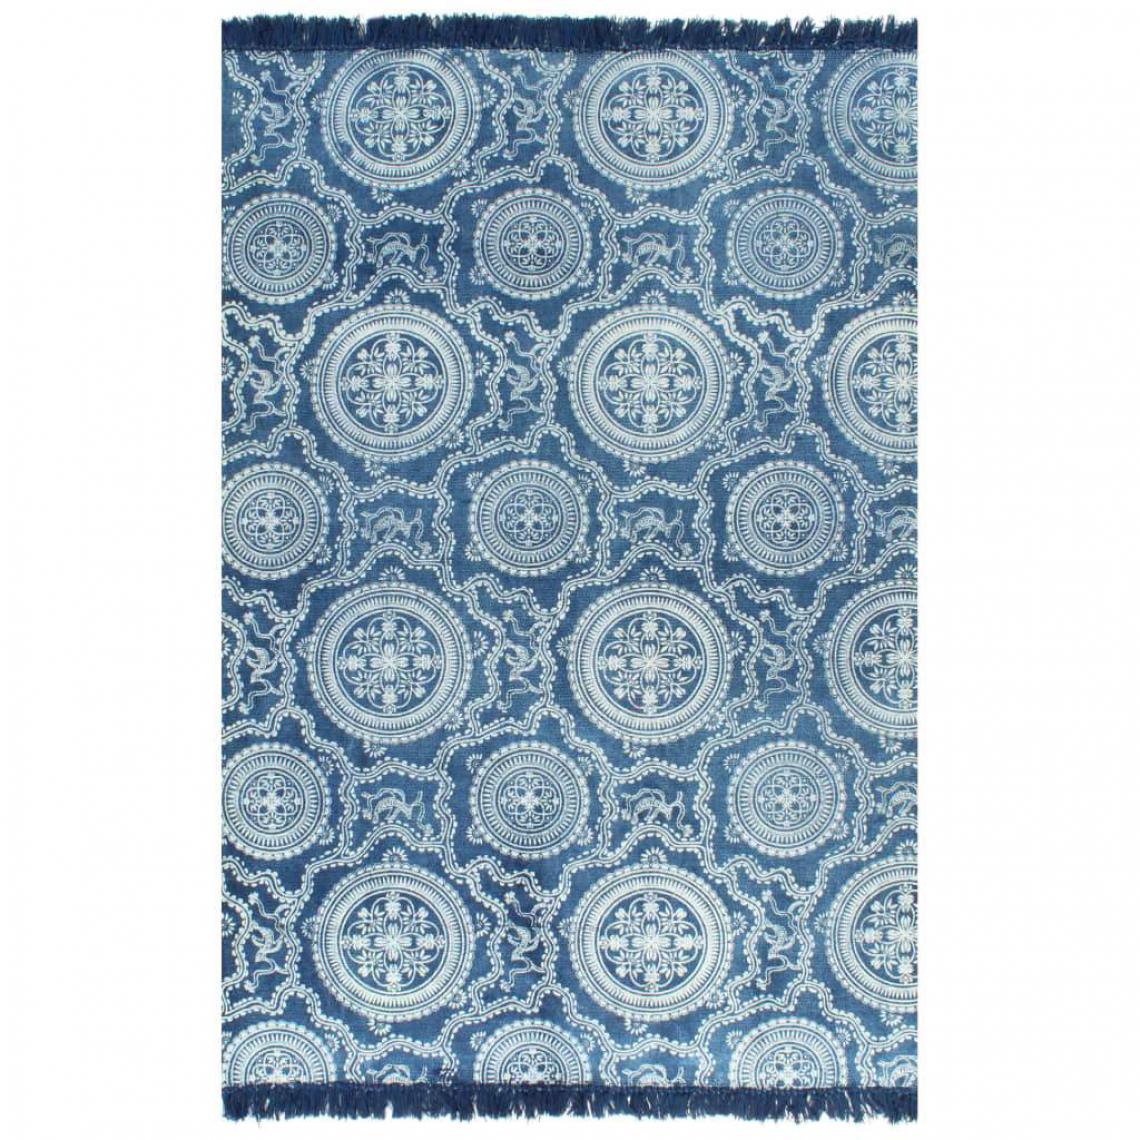 Decoshop26 - Tapis Kilim Coton 160 x 230 cm avec motif Bleu DEC023972 - Tapis